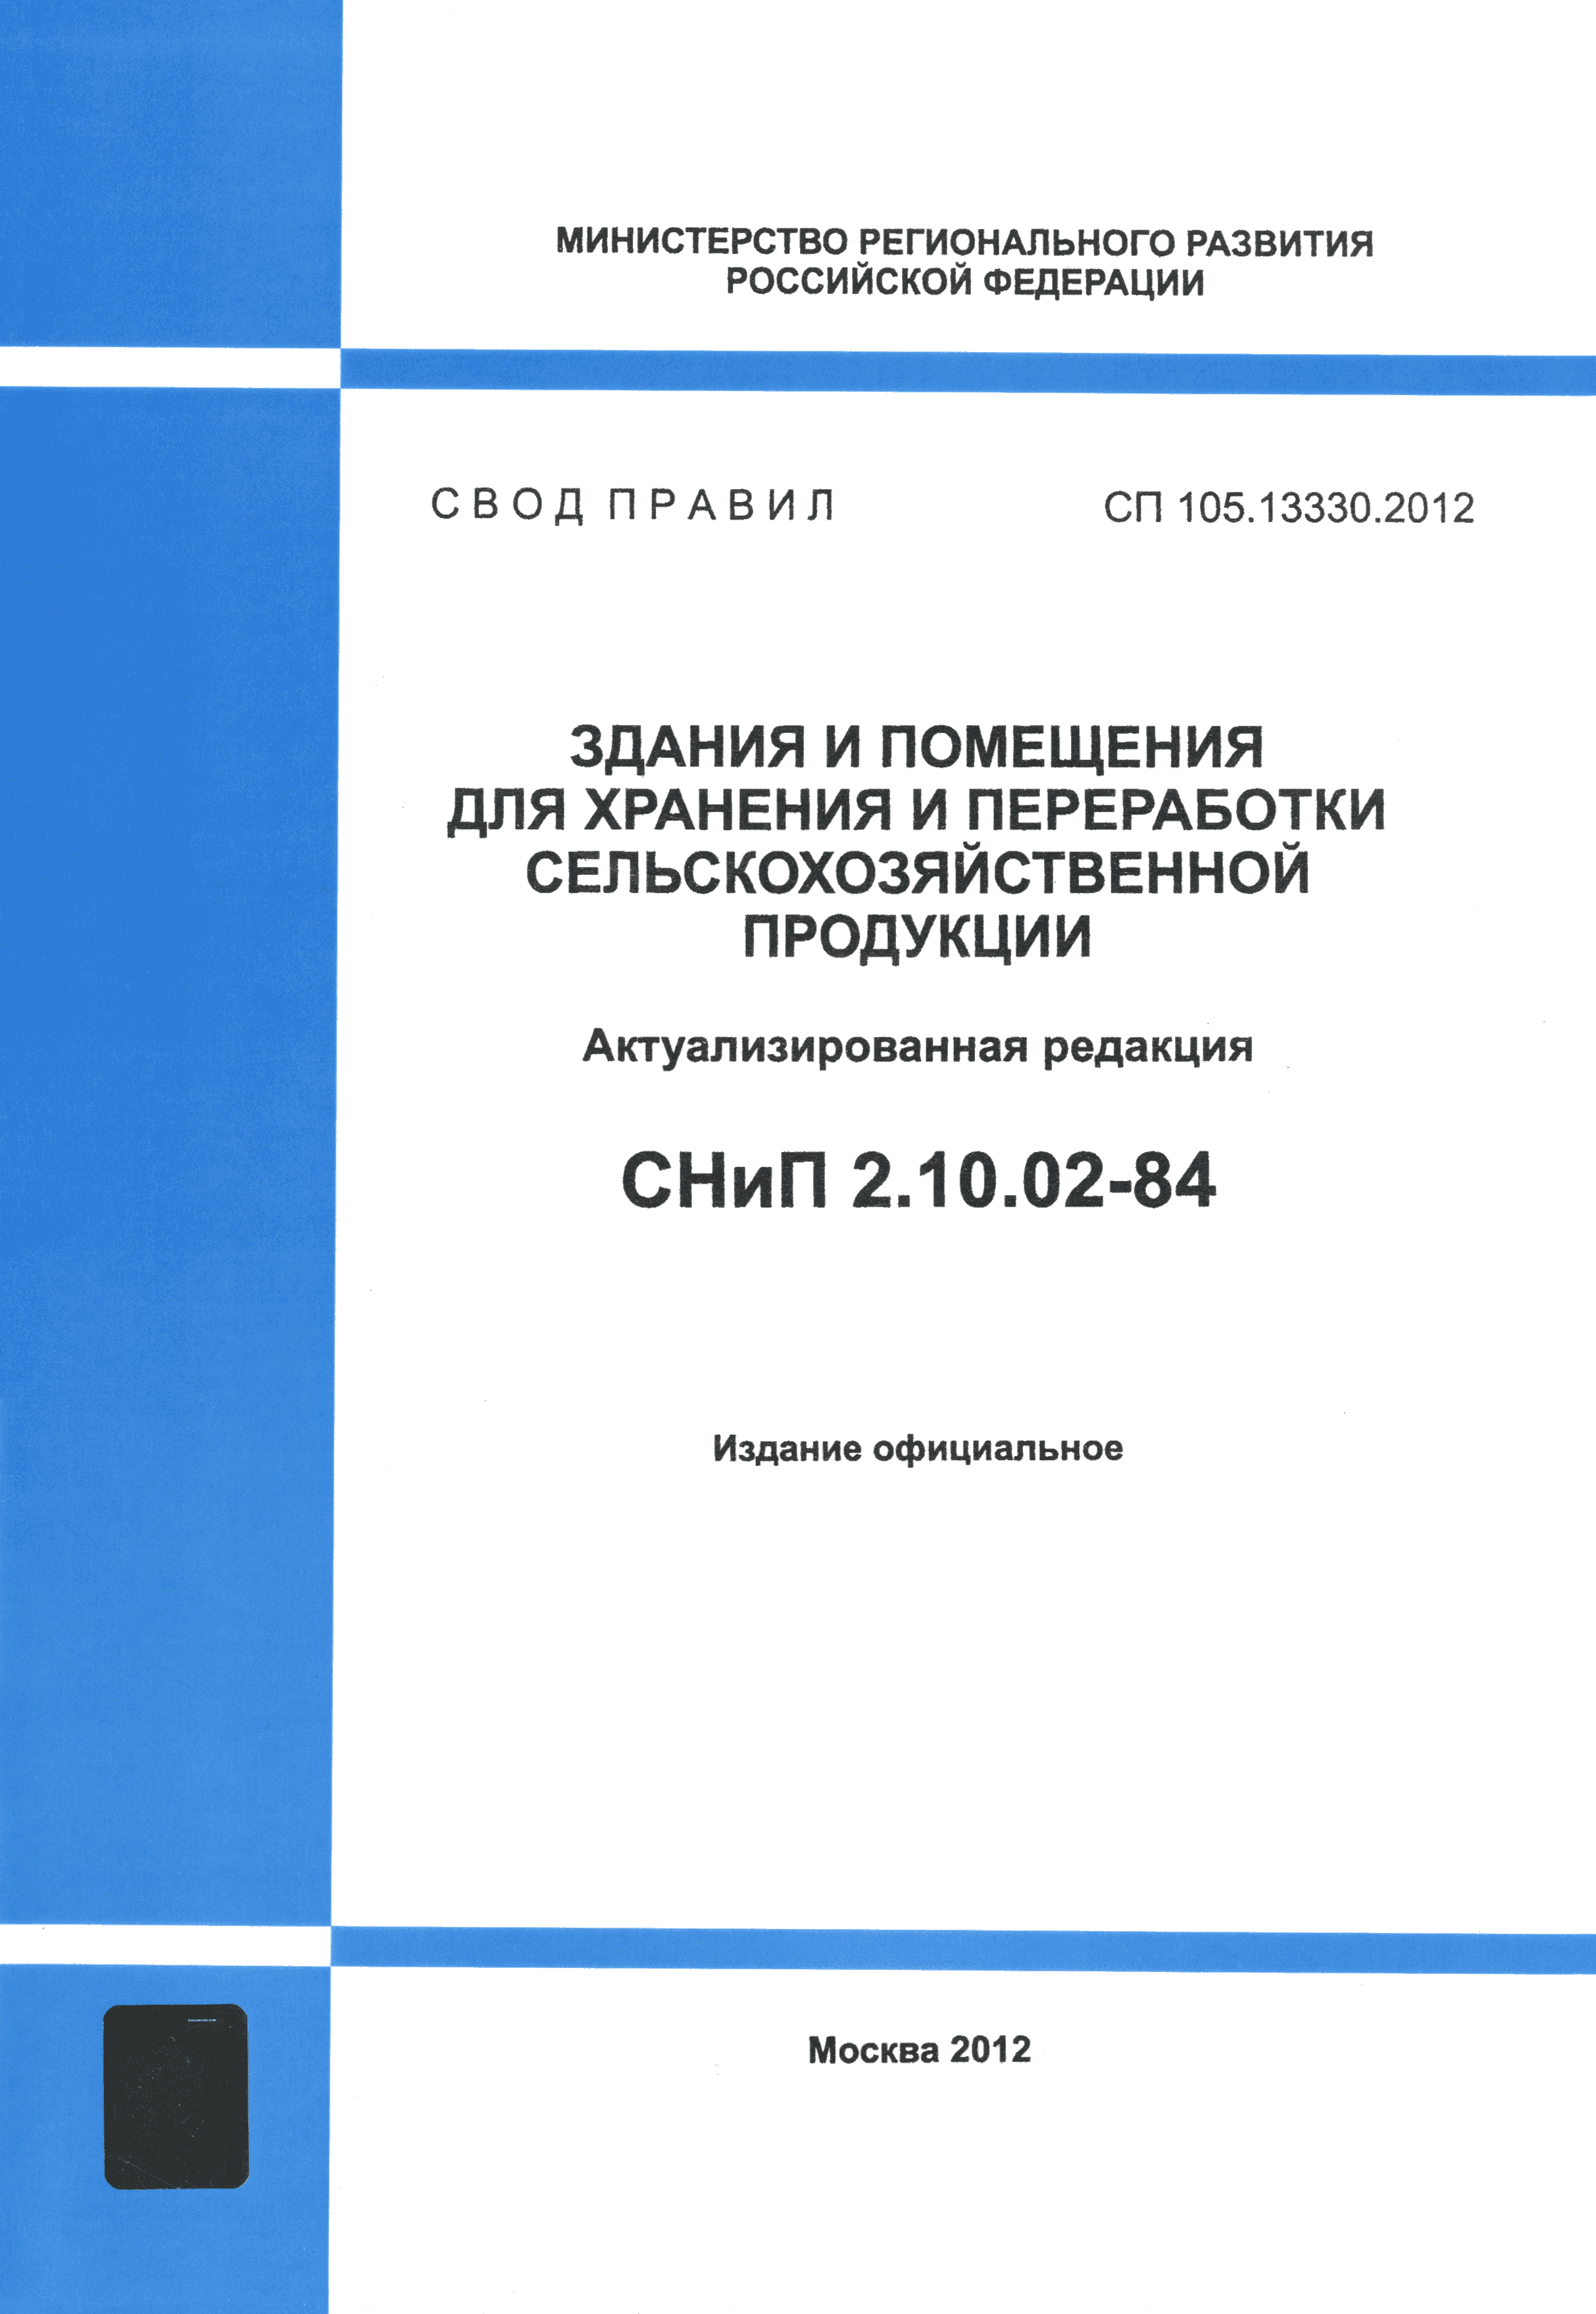 СП 105.13330.2012